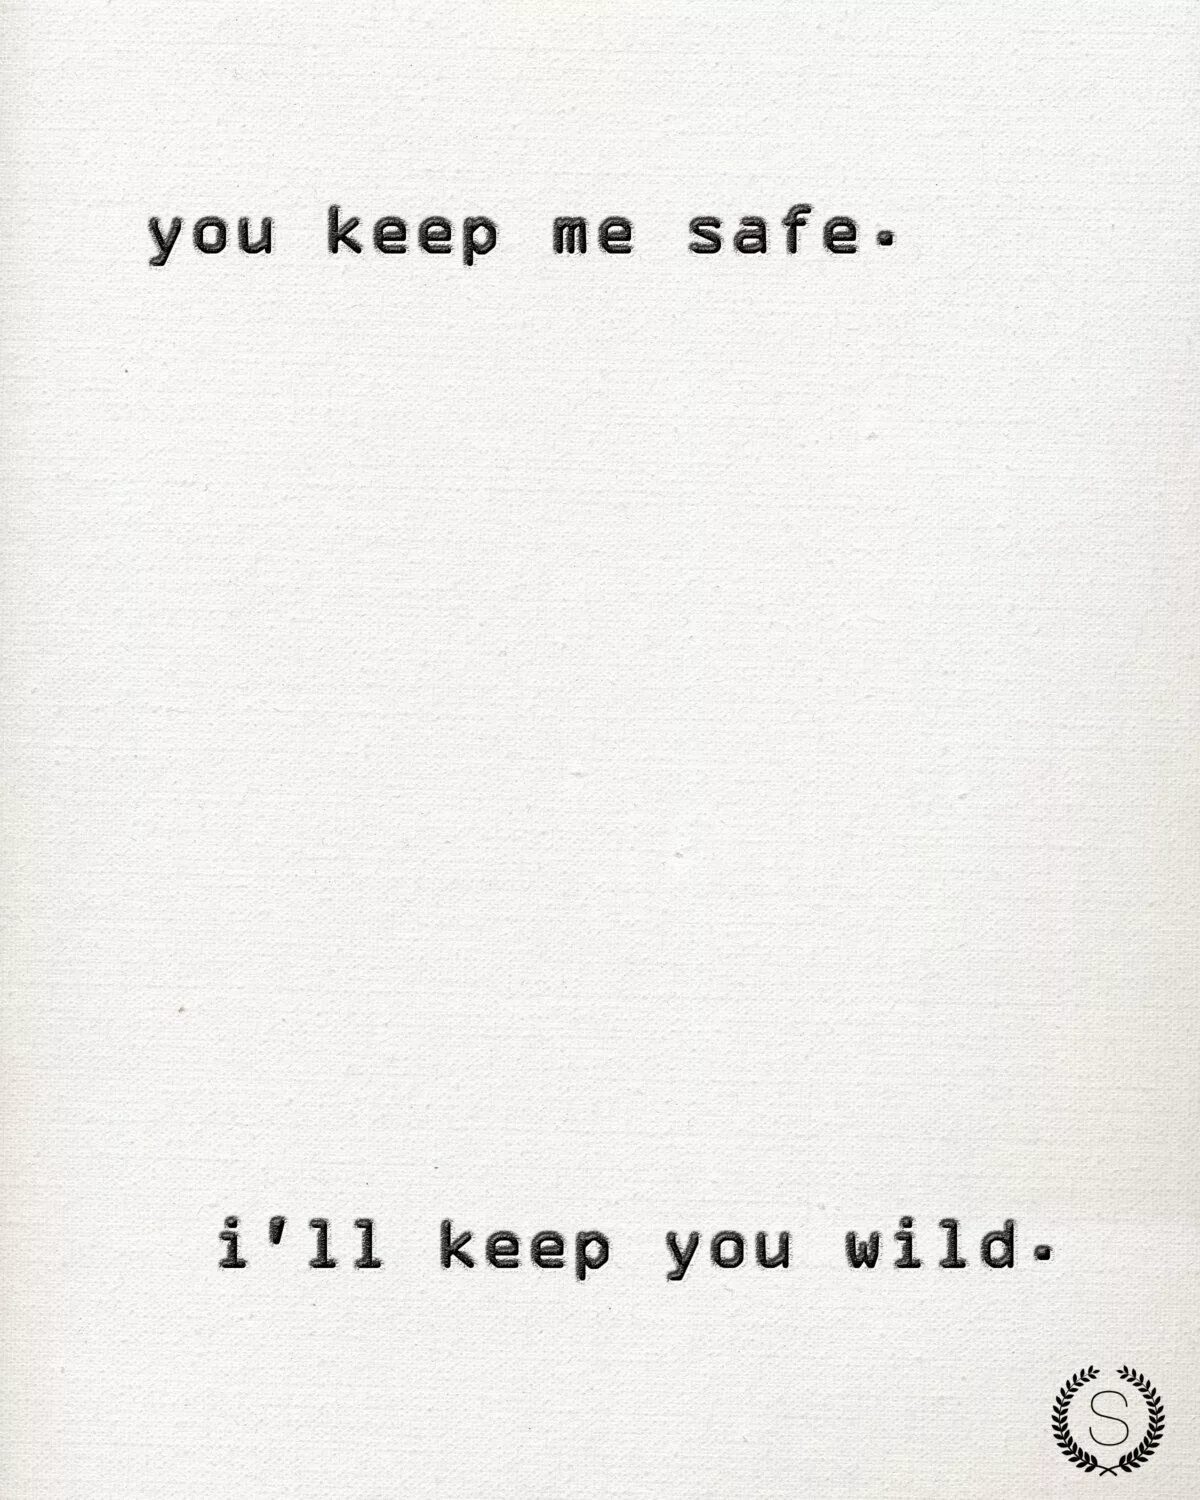 Keep me safe. You keep me safe i'll keep you Wild. I'll keep you safe текст. Keep you safe. You keep me safe перевод.